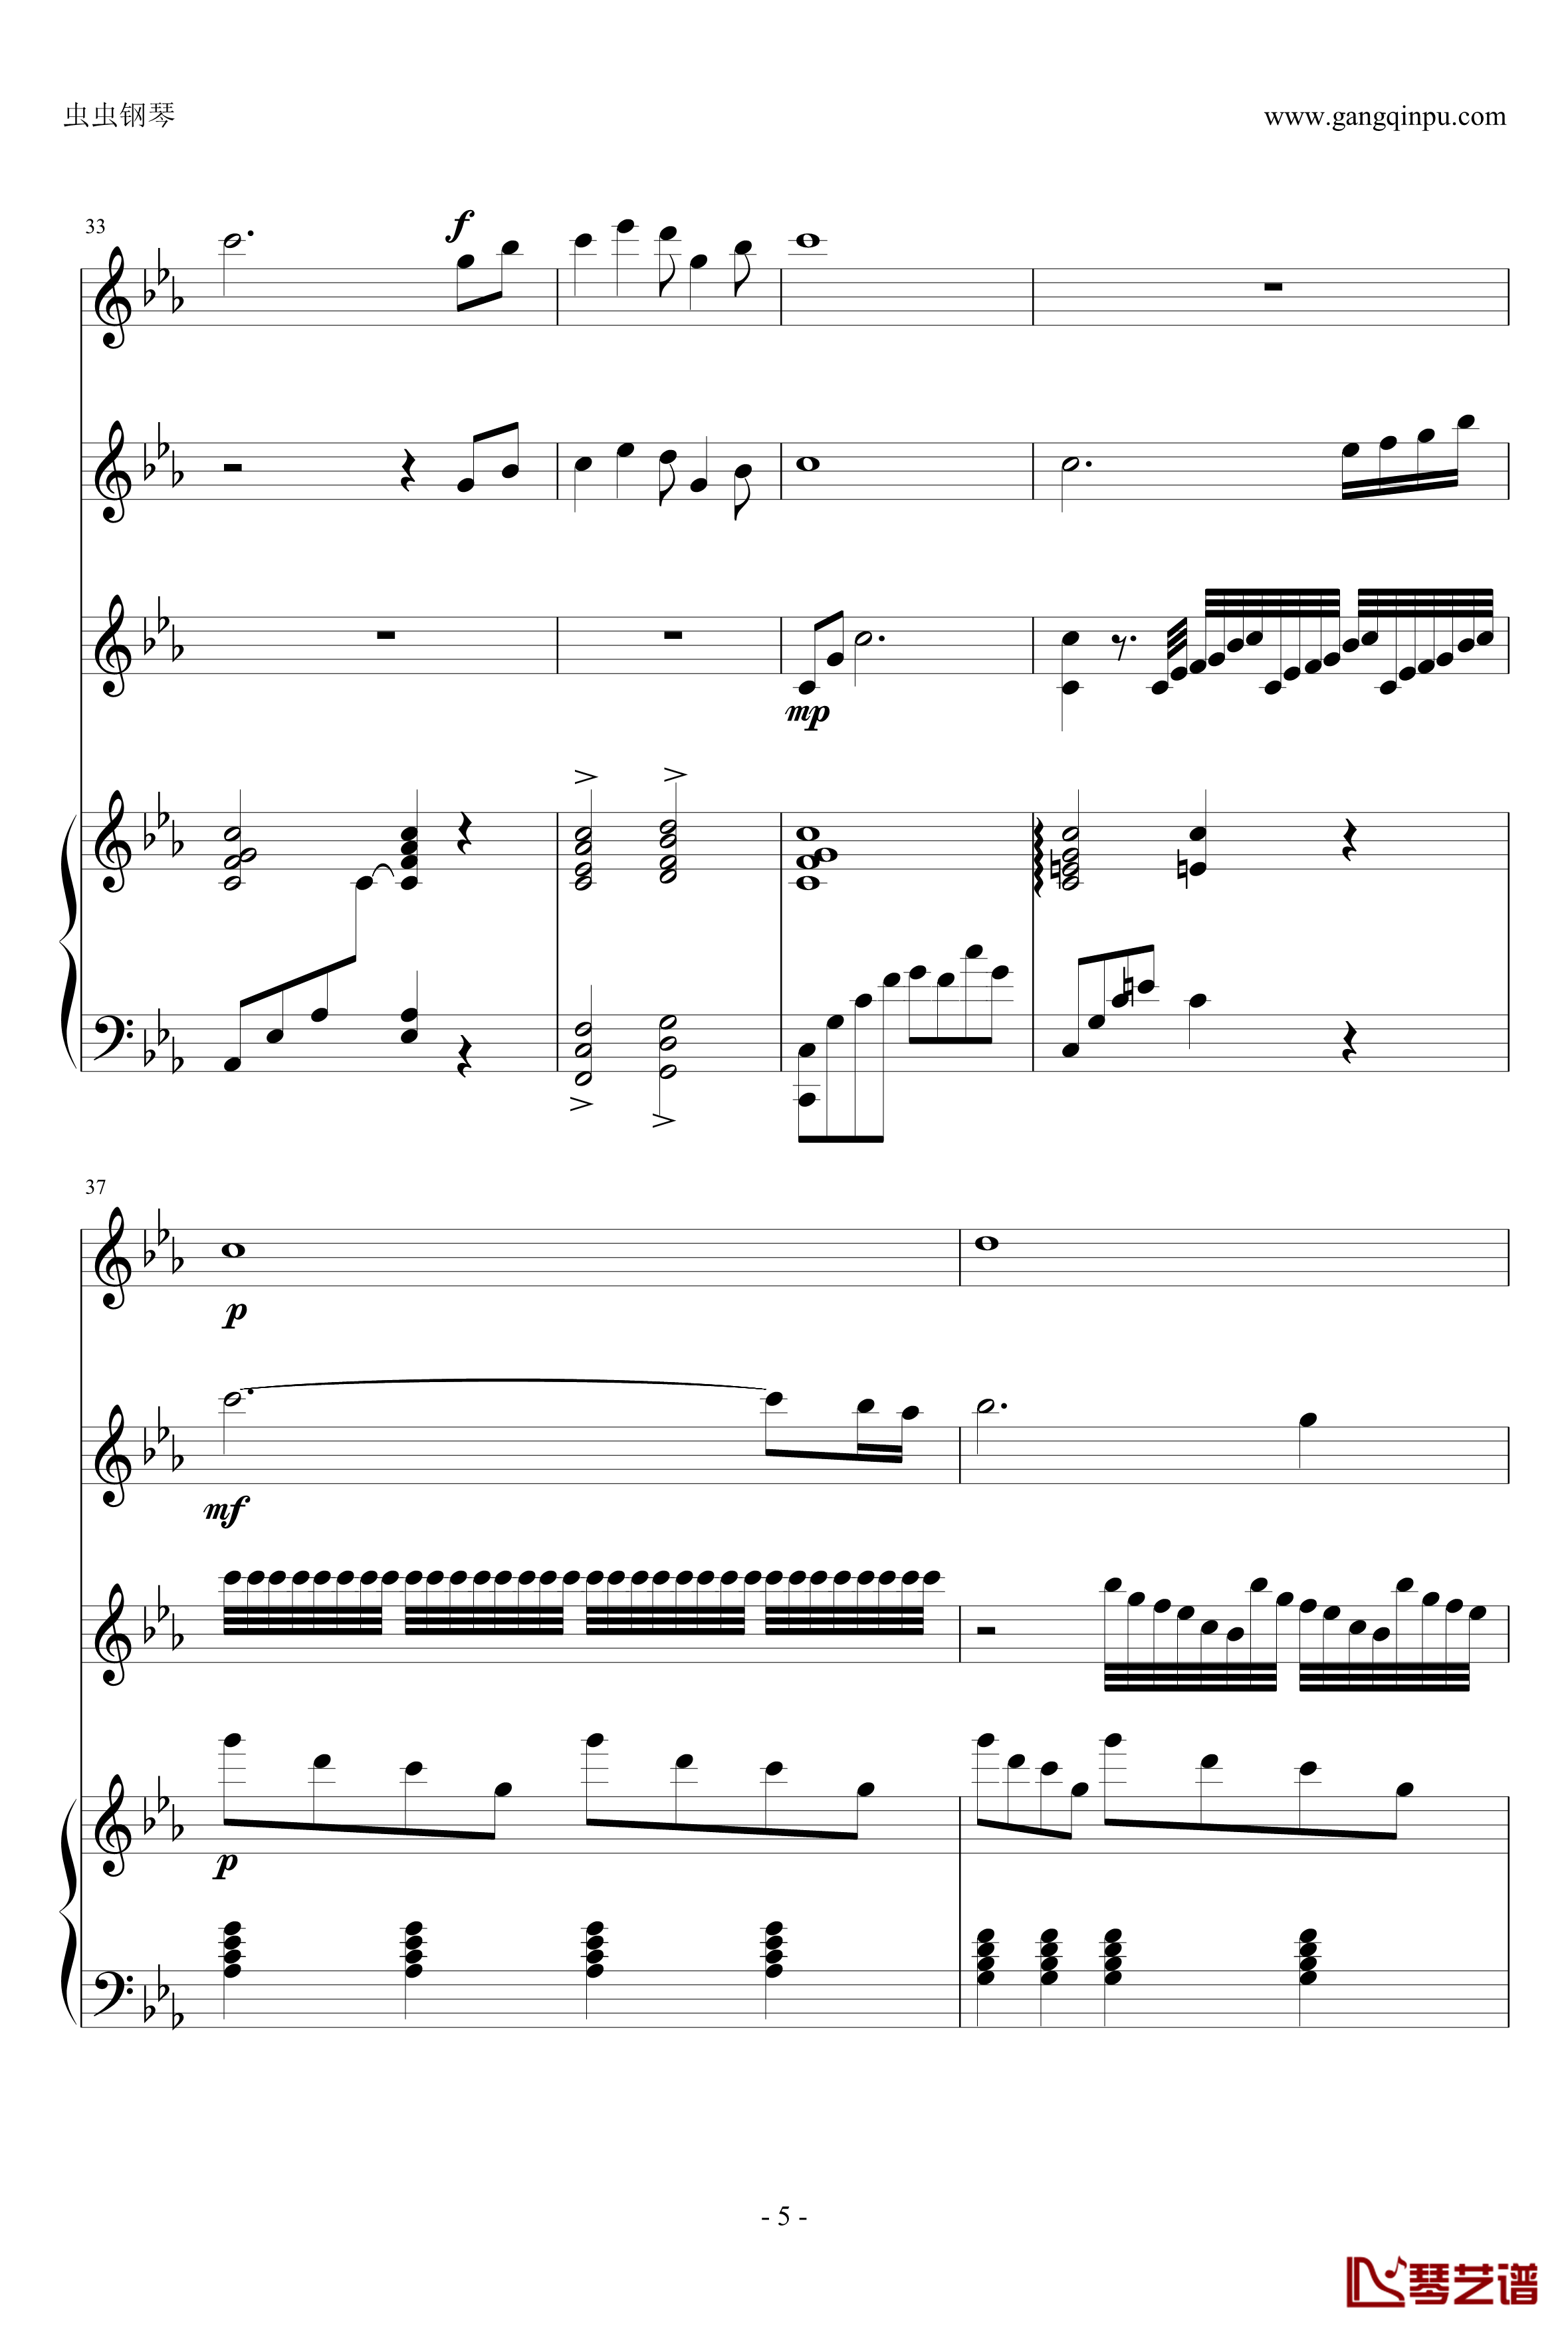 幽灵公主钢琴谱-合奏版总谱-二胡、古筝、小提琴、钢琴-久石让5